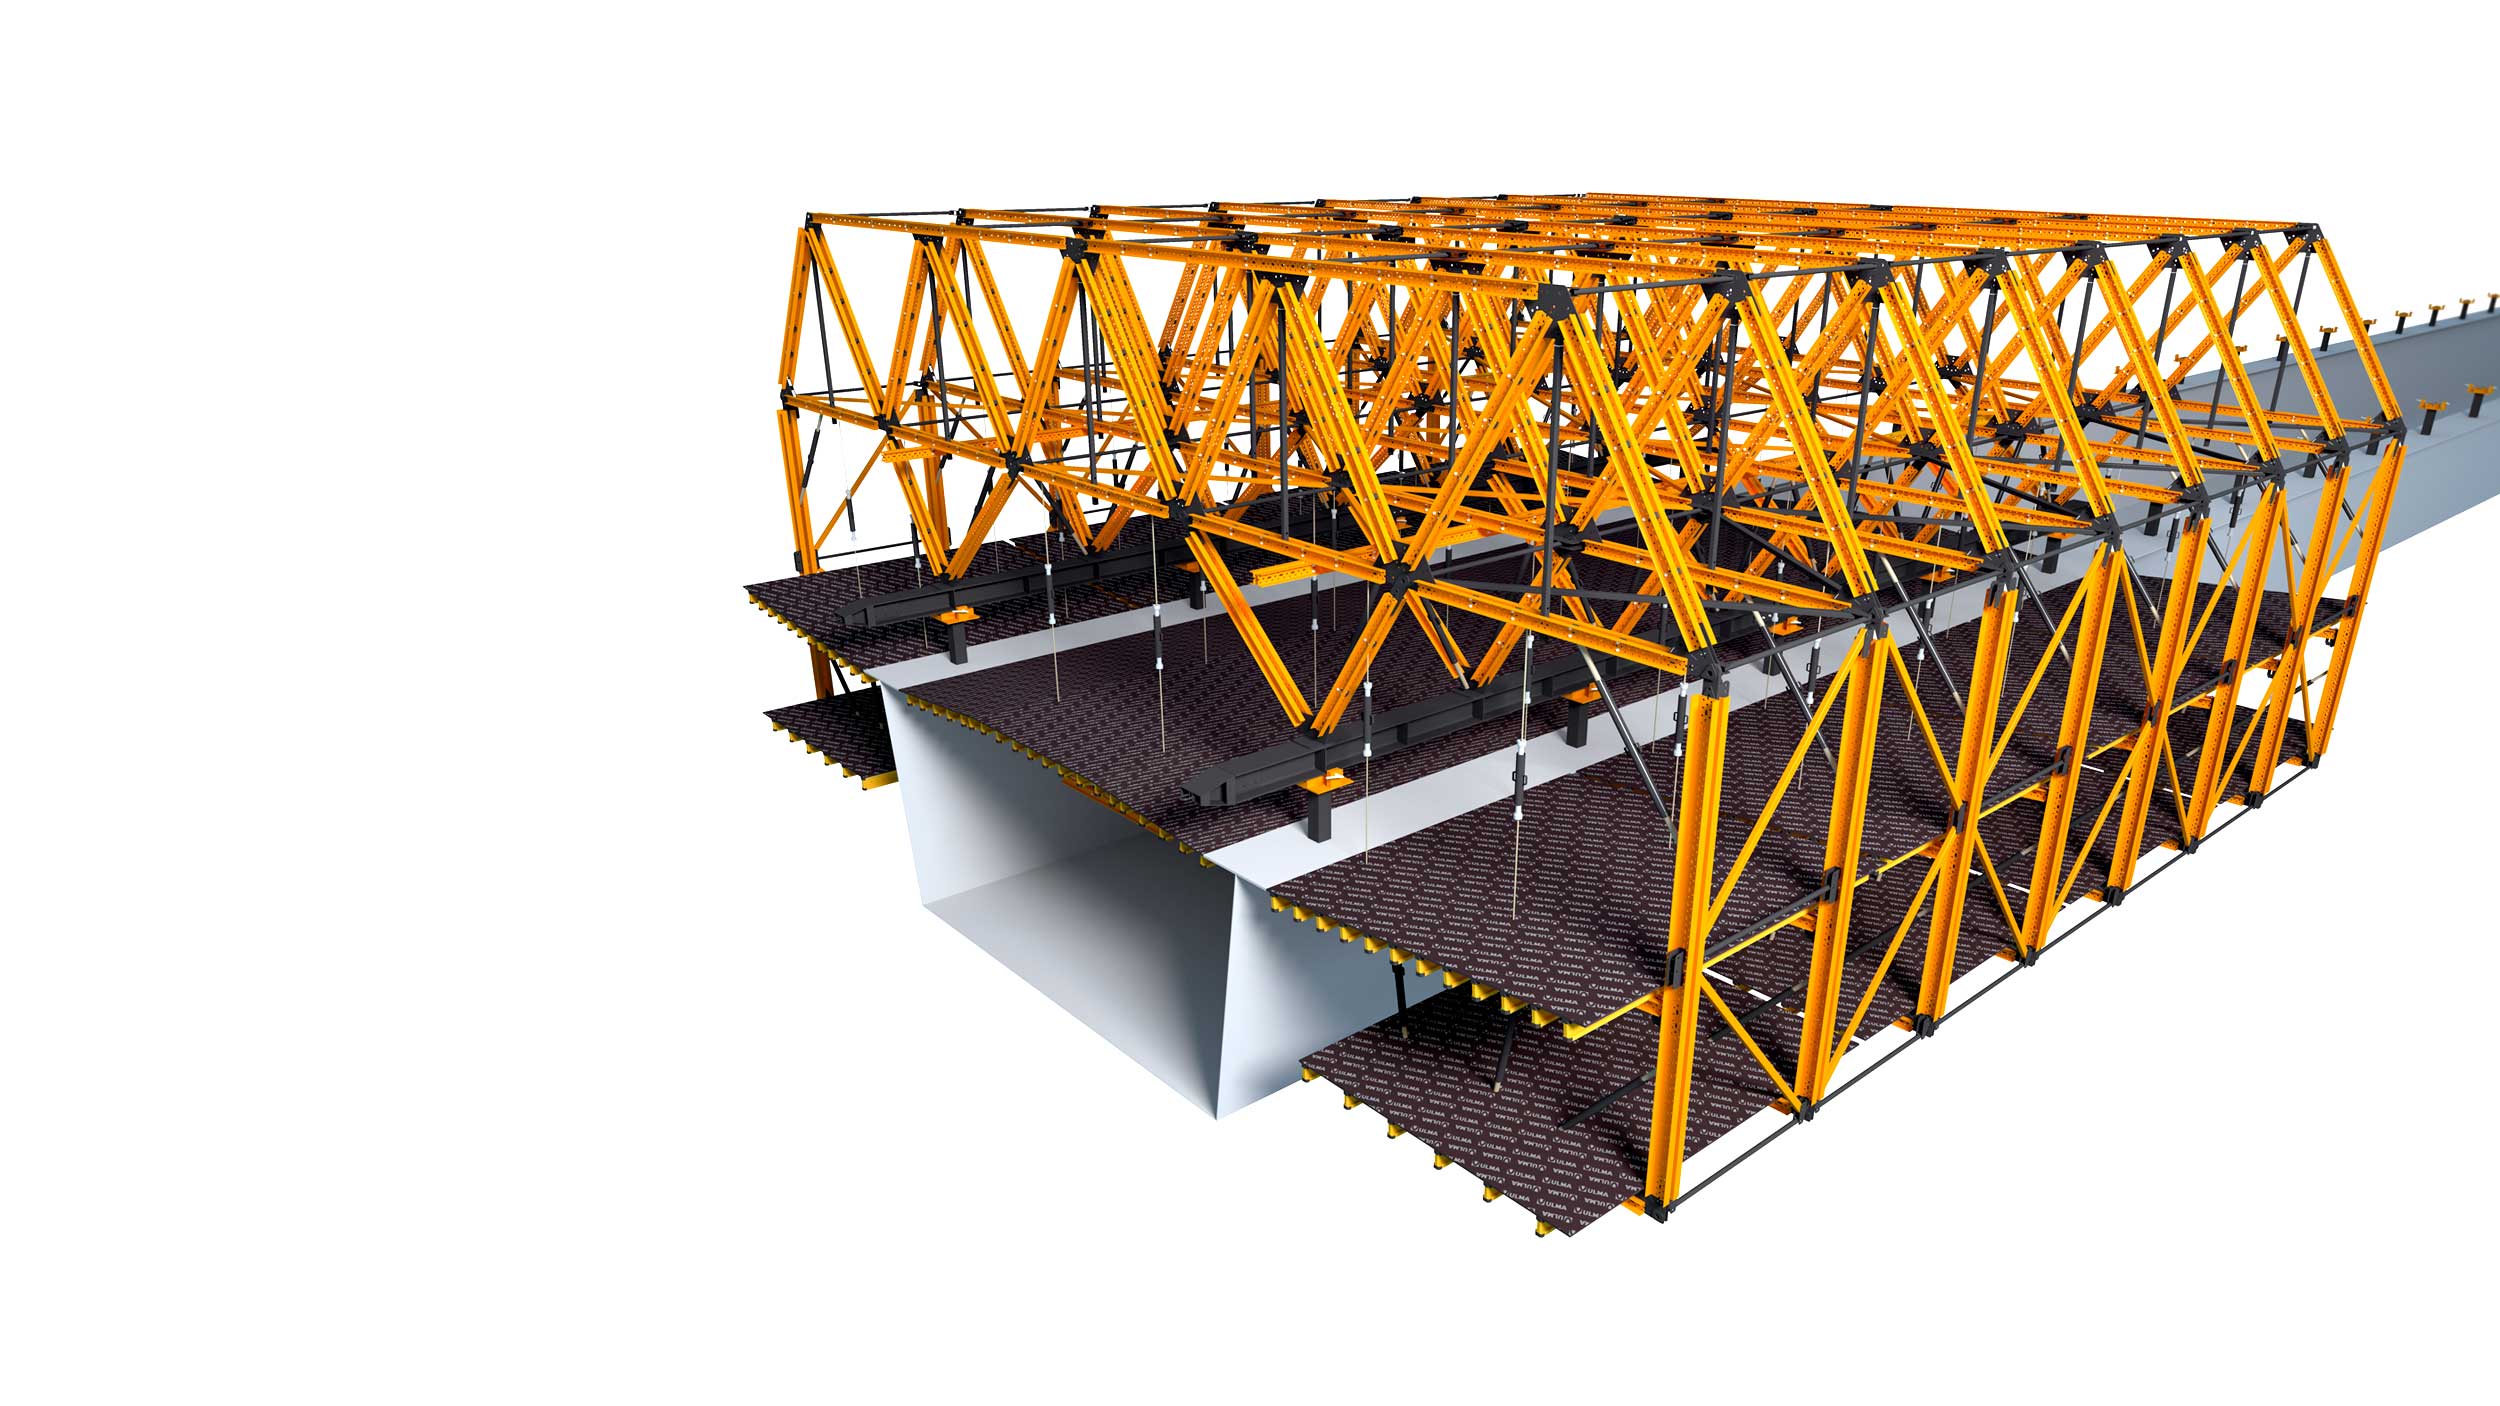 Carro de voladizos para puentes mixtos y puentes de hormigón parcialmente prefabricados. Características destacables: configurable para cada proyecto. Agiliza los ritmos de ejecución.